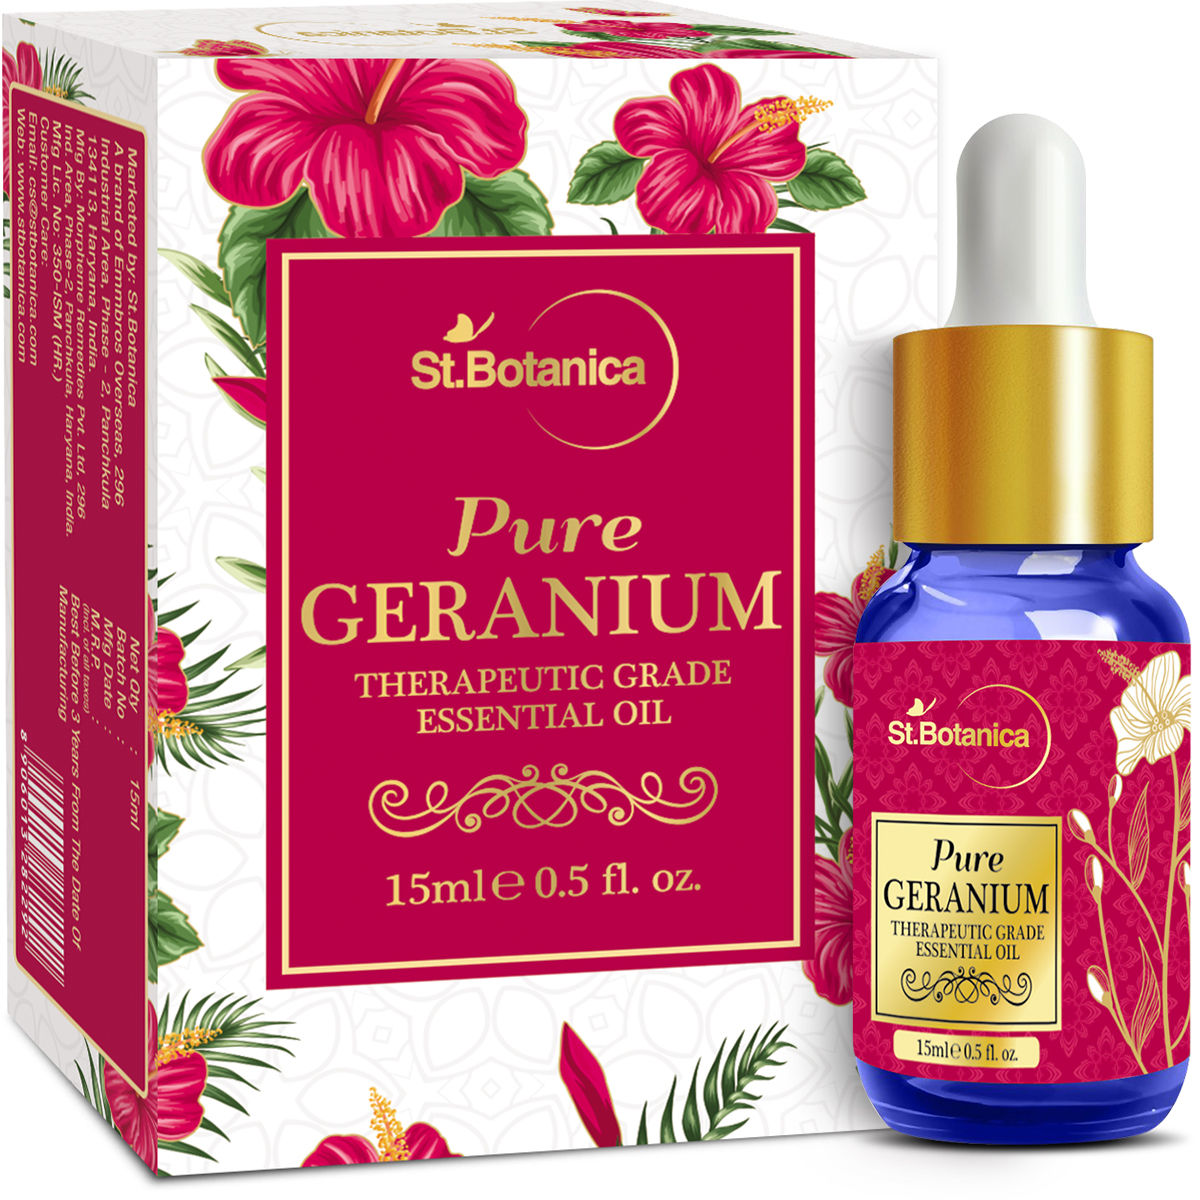 Buy St.Botanica Pure Geranium Therapeutic Grade Essential Oil (15 ml) - Purplle